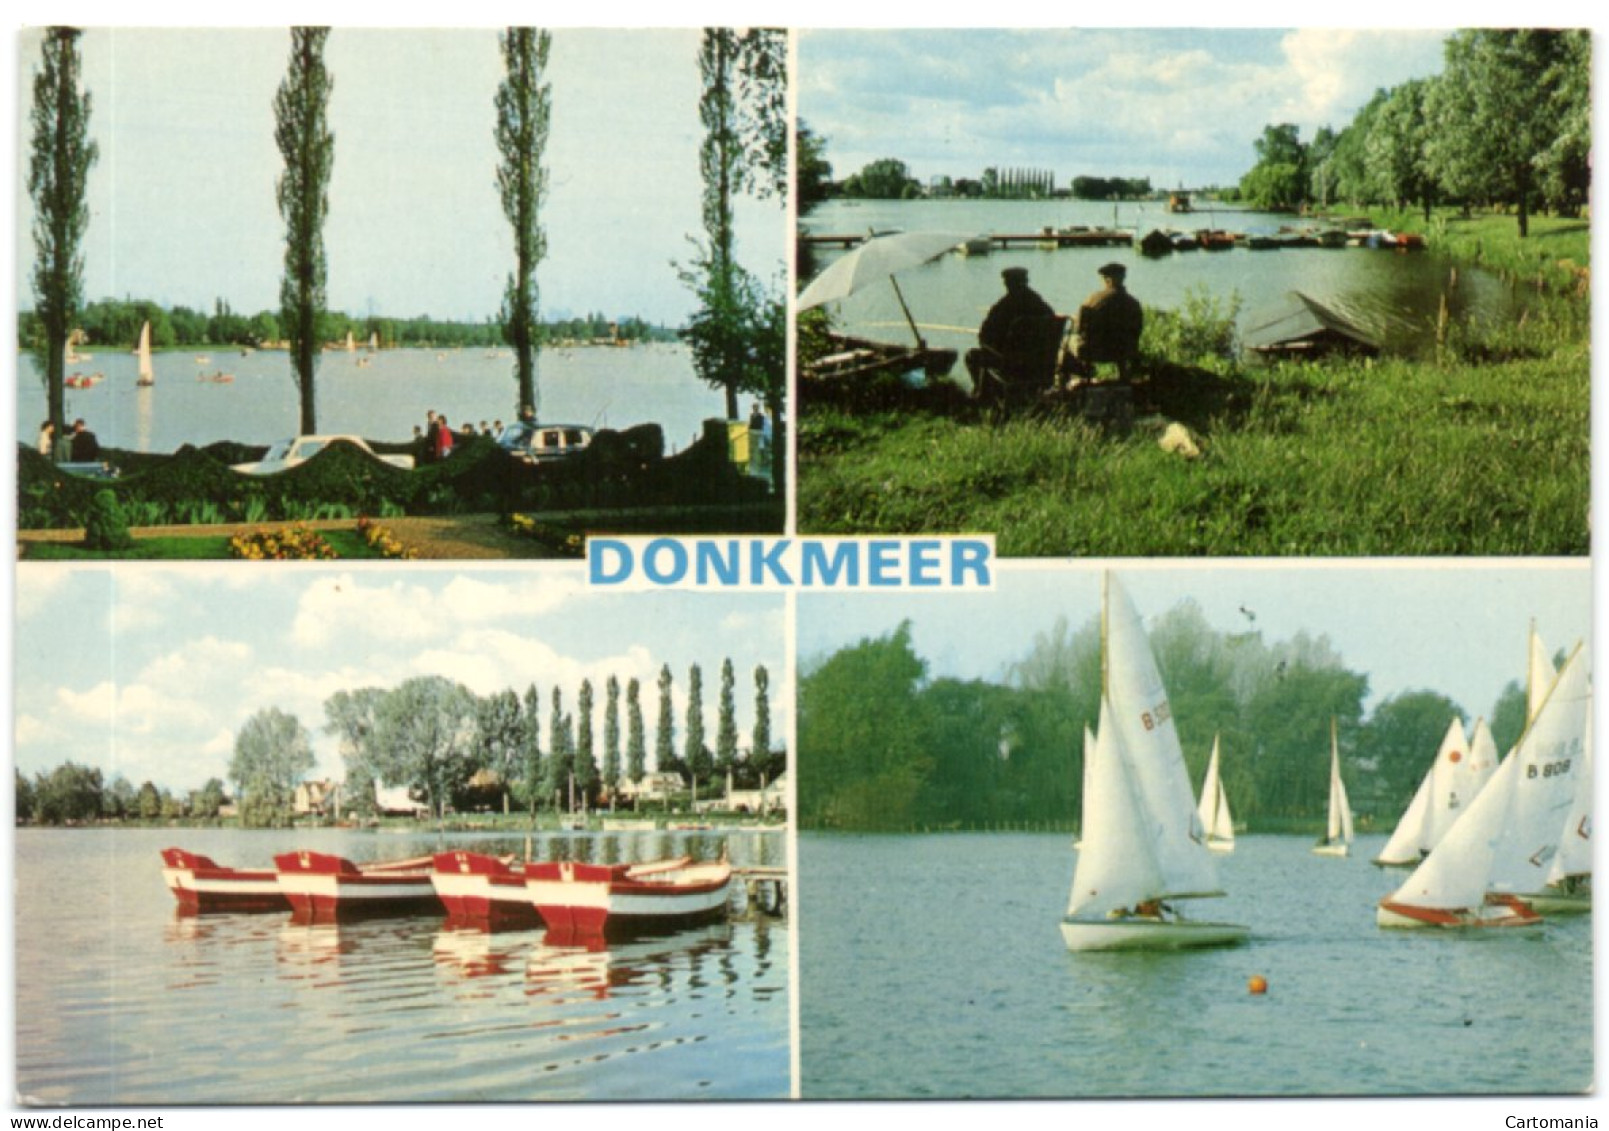 Berlare - Overmere - Uitbergen - Donkmeer - Berlare